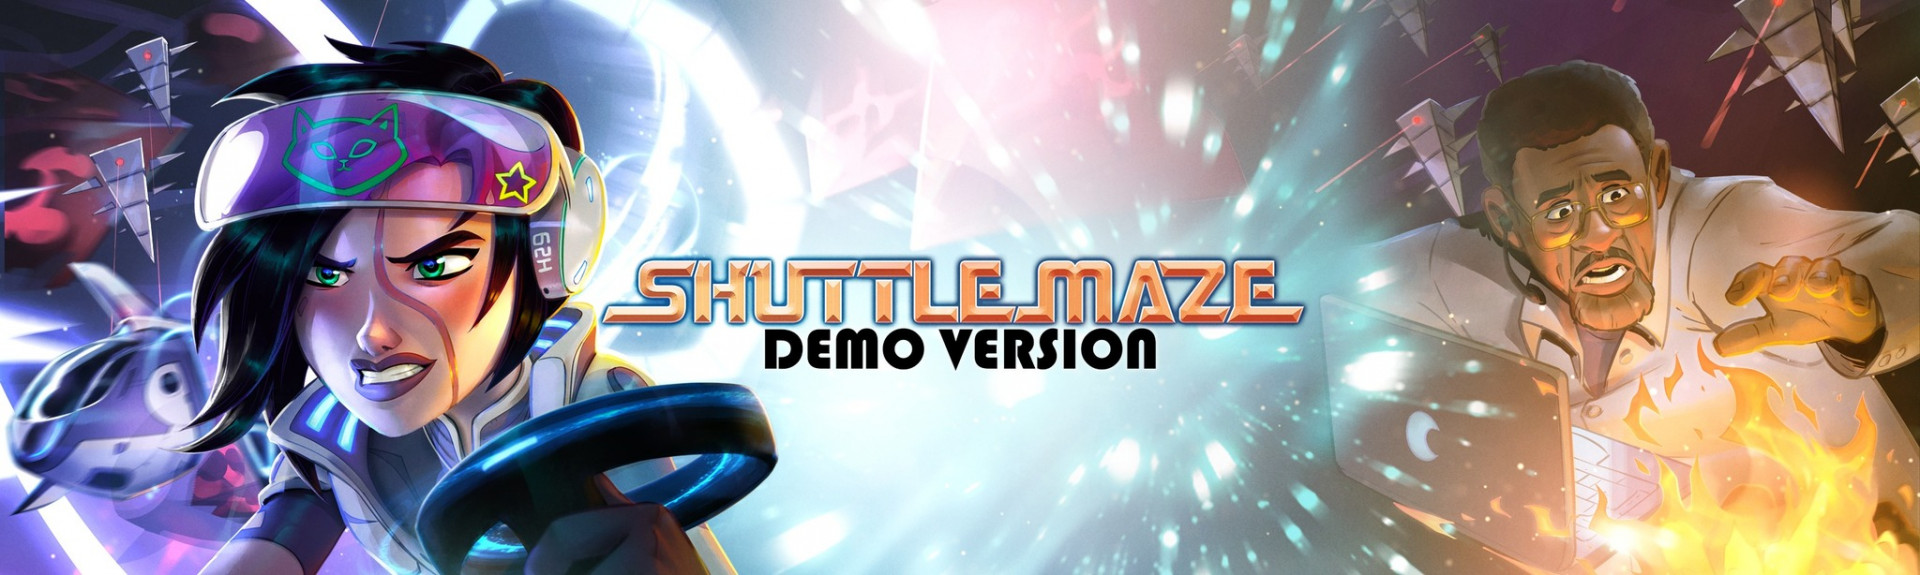 Shuttle Maze Demo